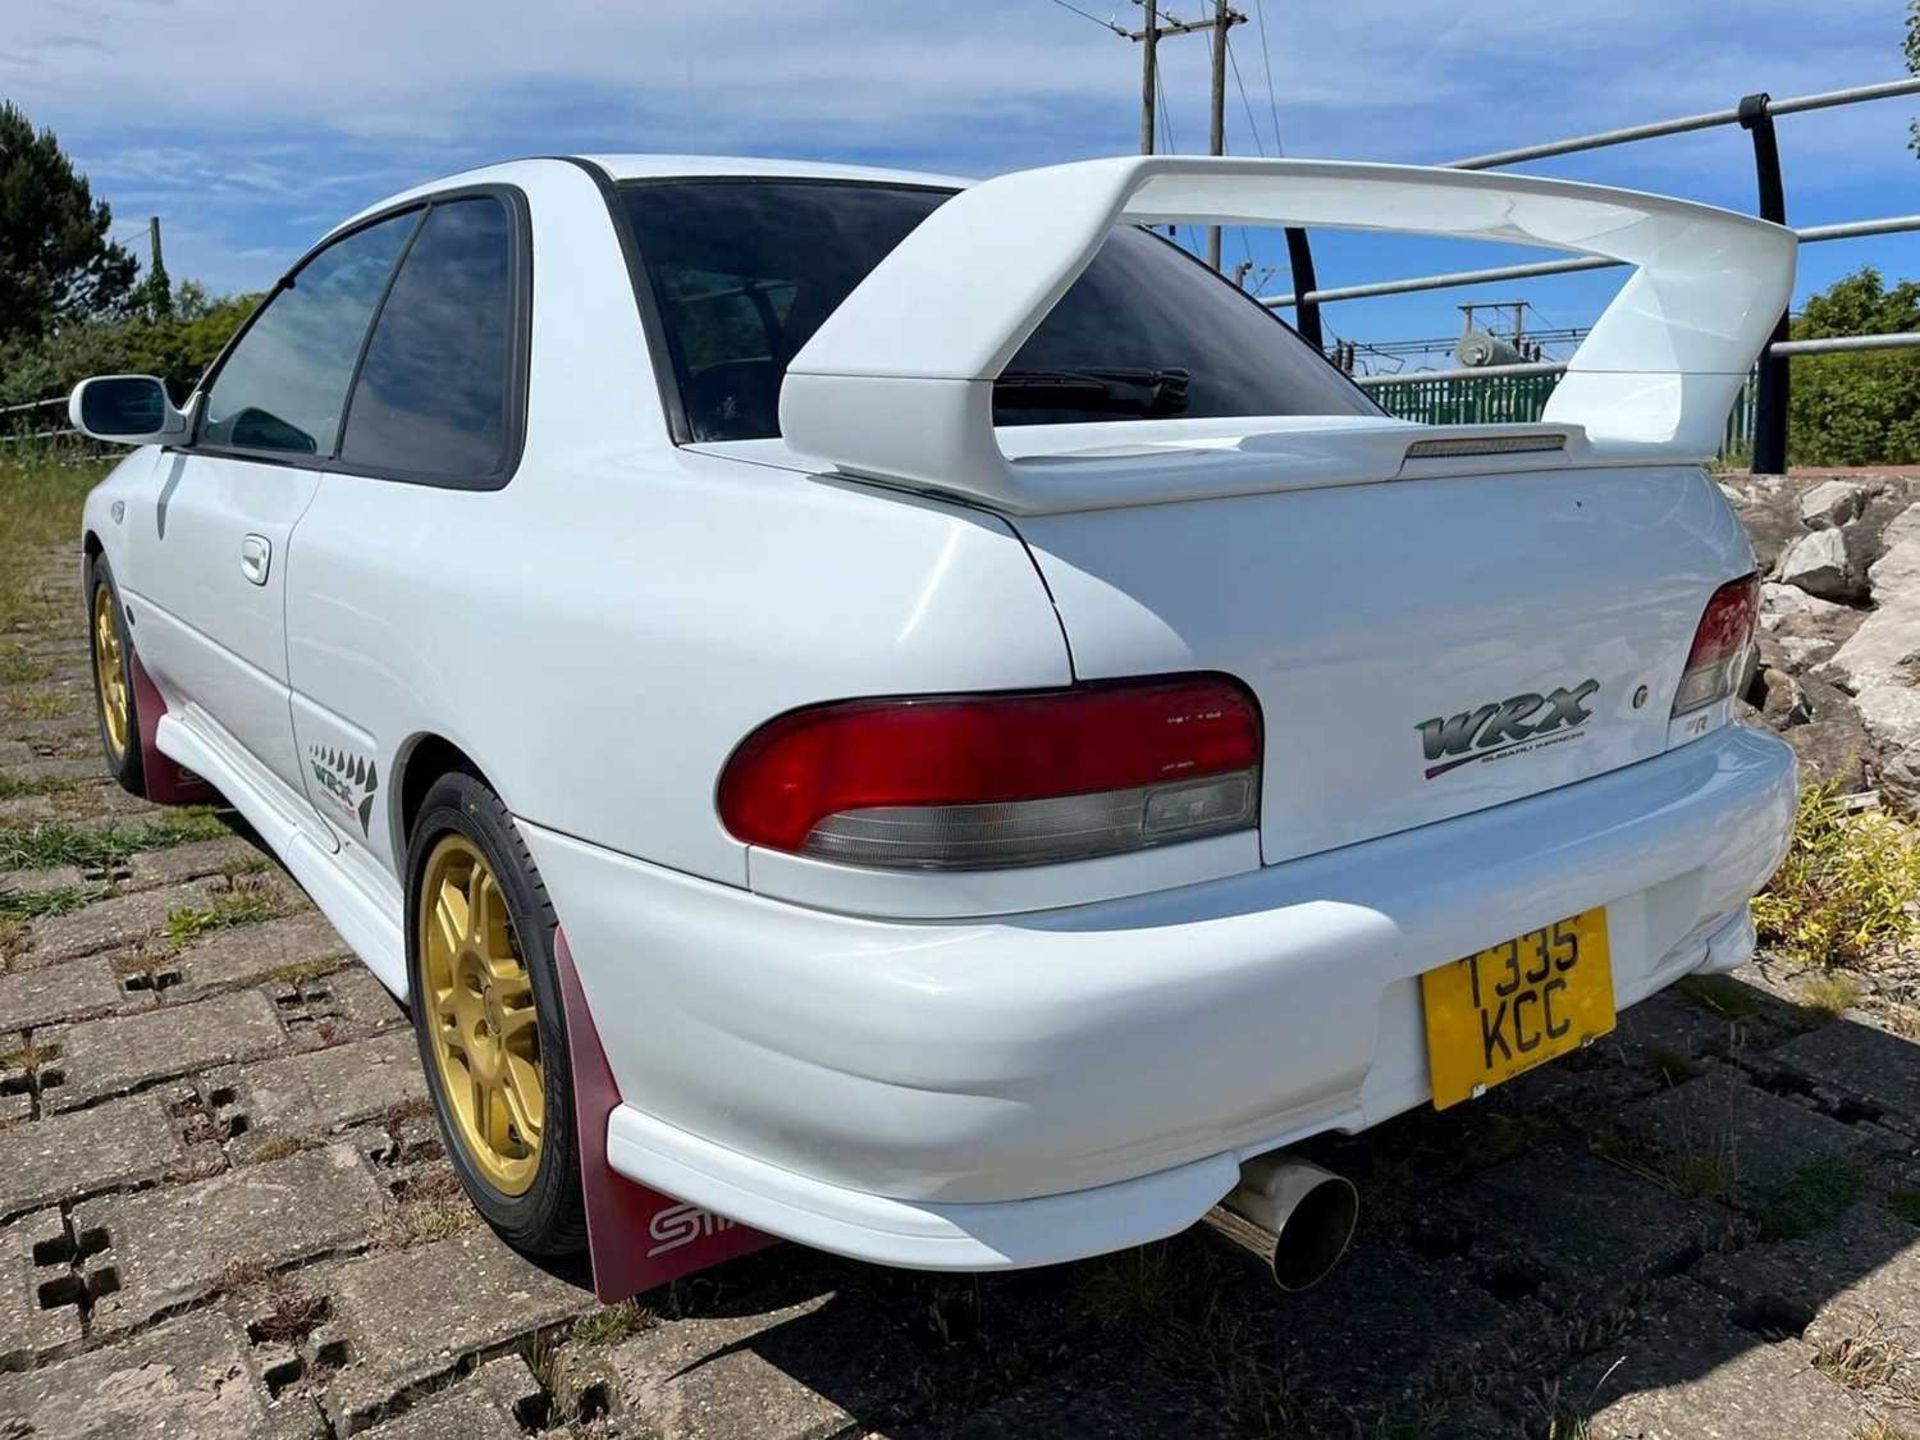 1999 Subaru Impreza WRX STI-Type R - Image 11 of 29